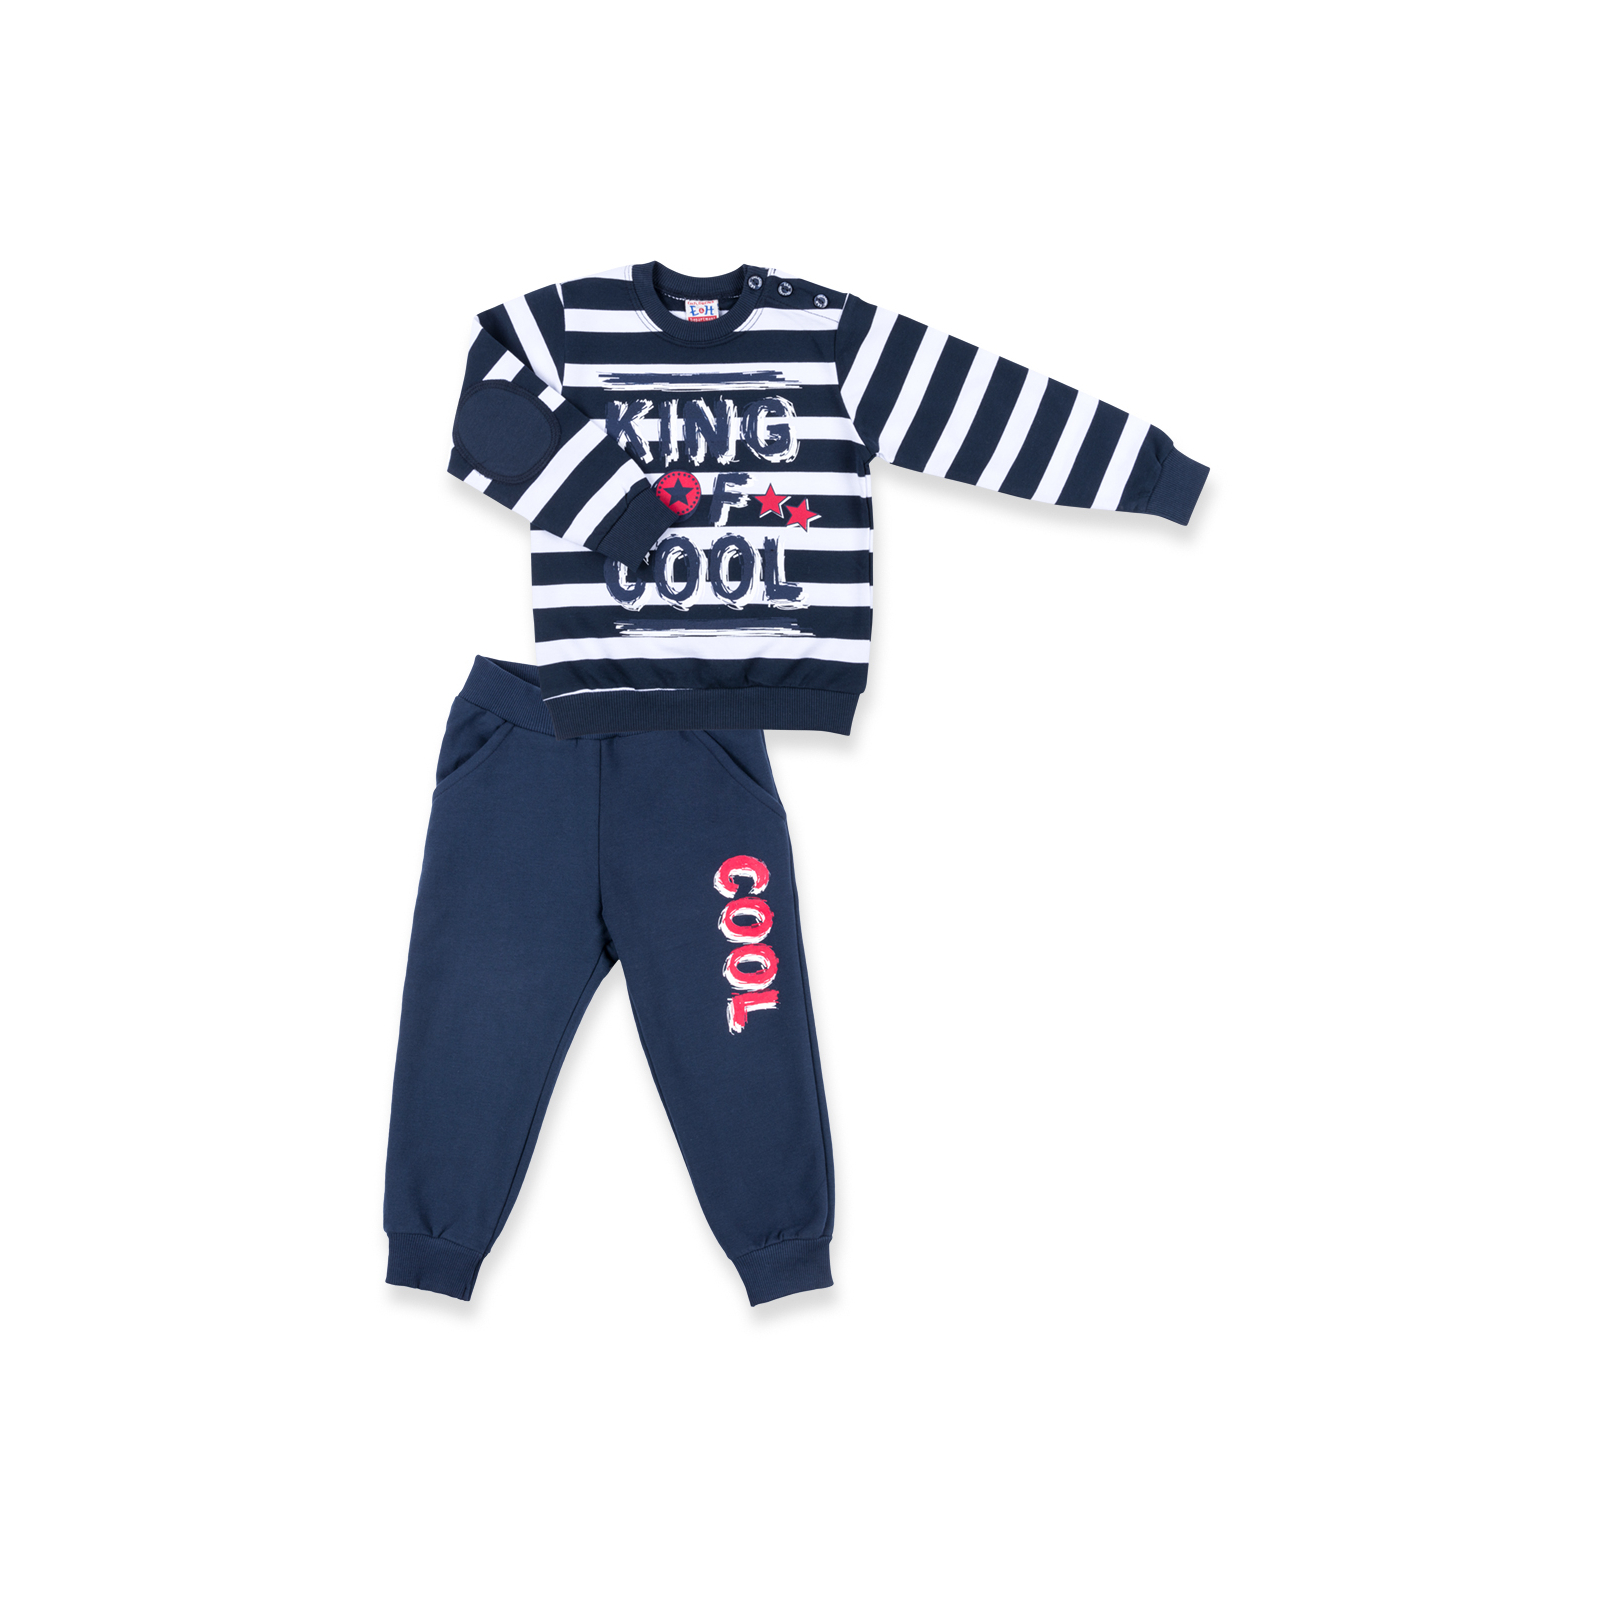 Набор детской одежды Breeze "KING OF COOL" (8632-104B-blue)